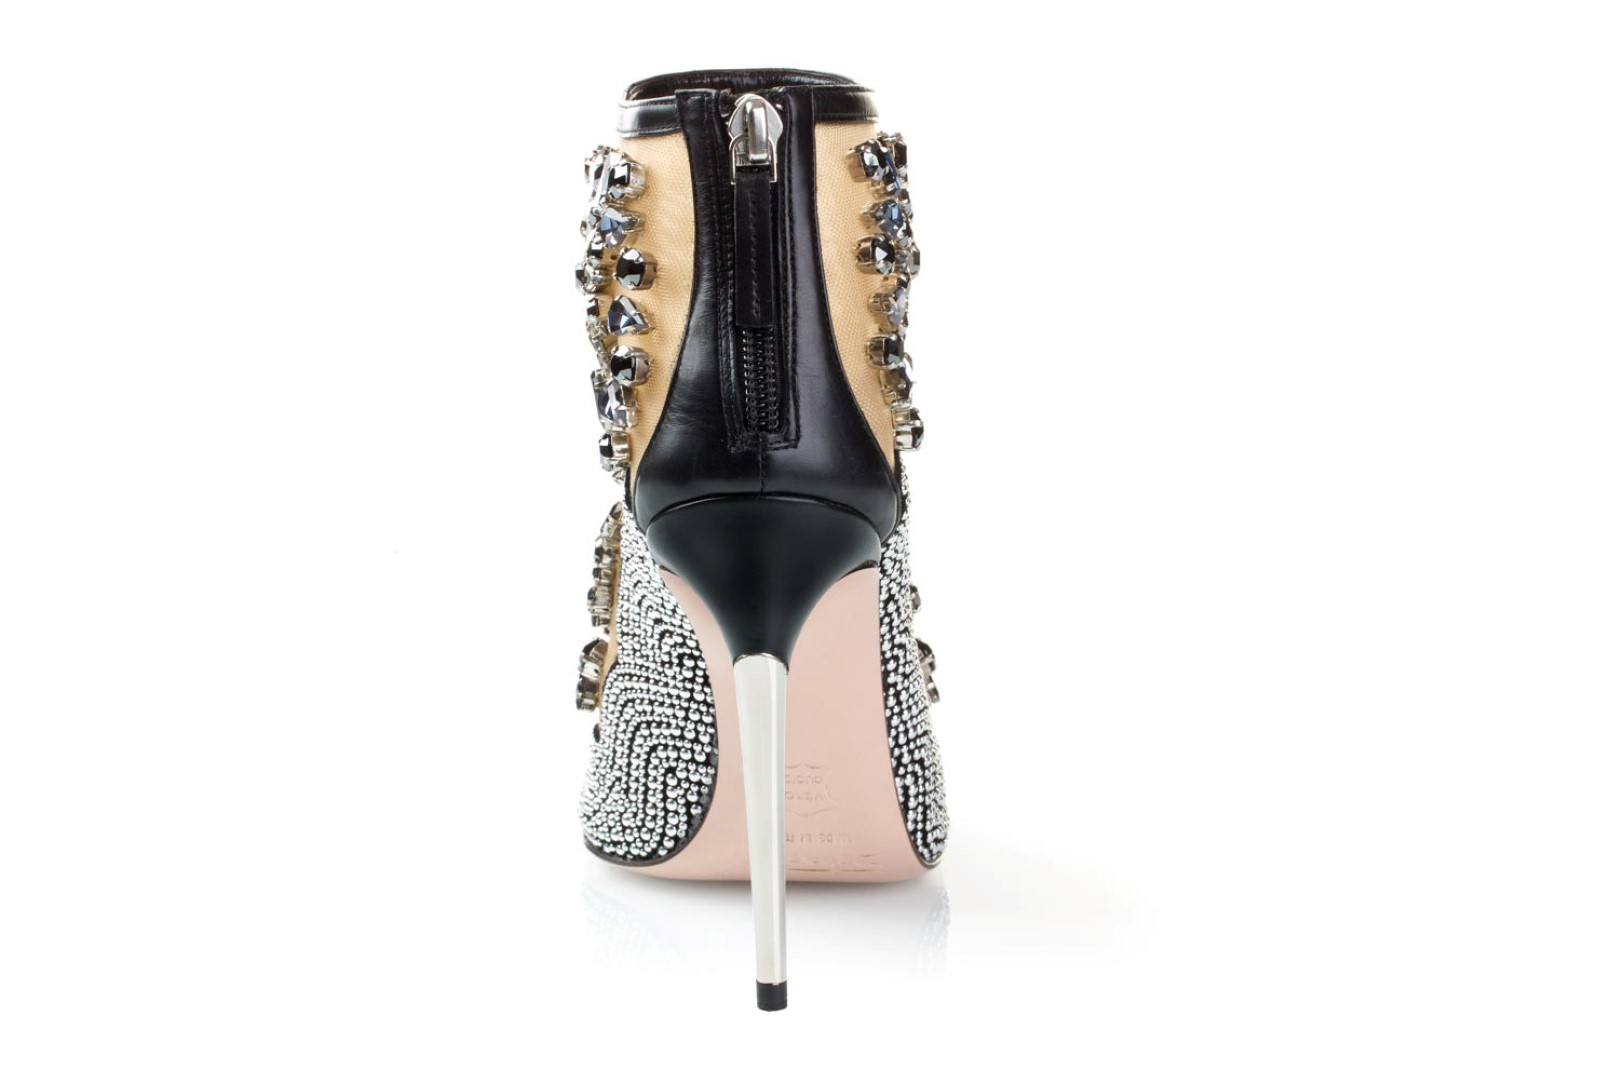 Sebastian scarpe autunno inverno 2015 2016: Diamond Booties, il nuovo oggetto del desiderio